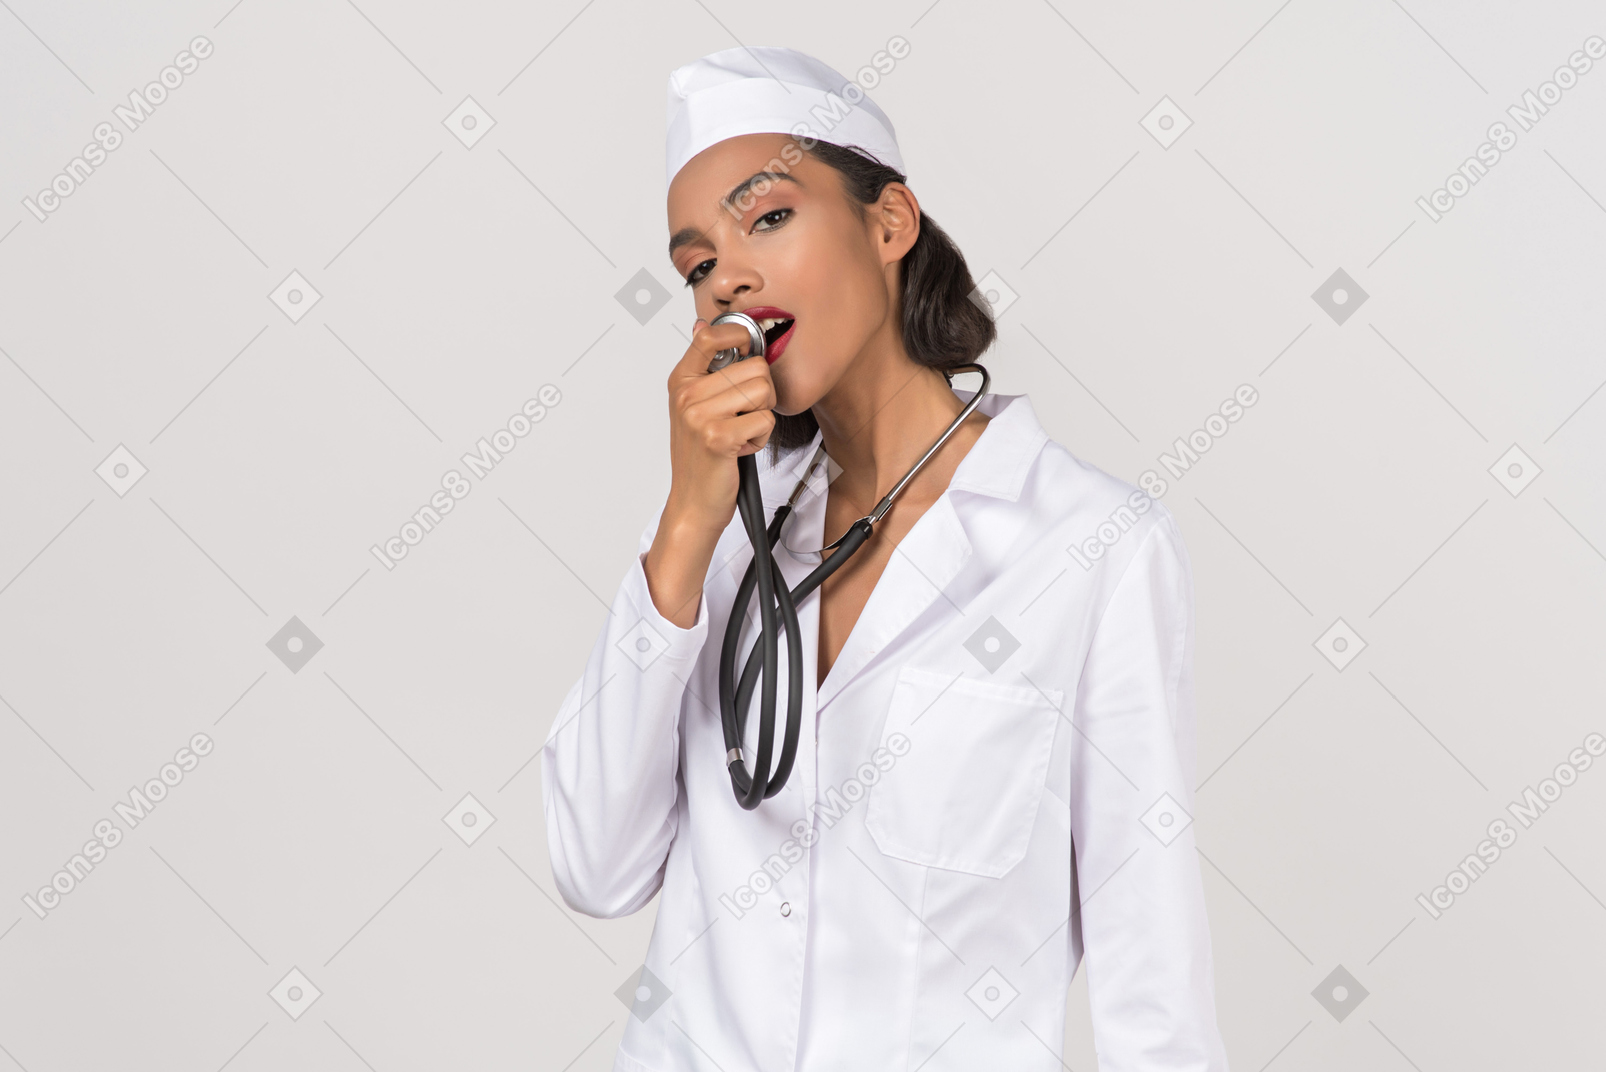 청진기를 들고 매력적인 젊은 여성 의사